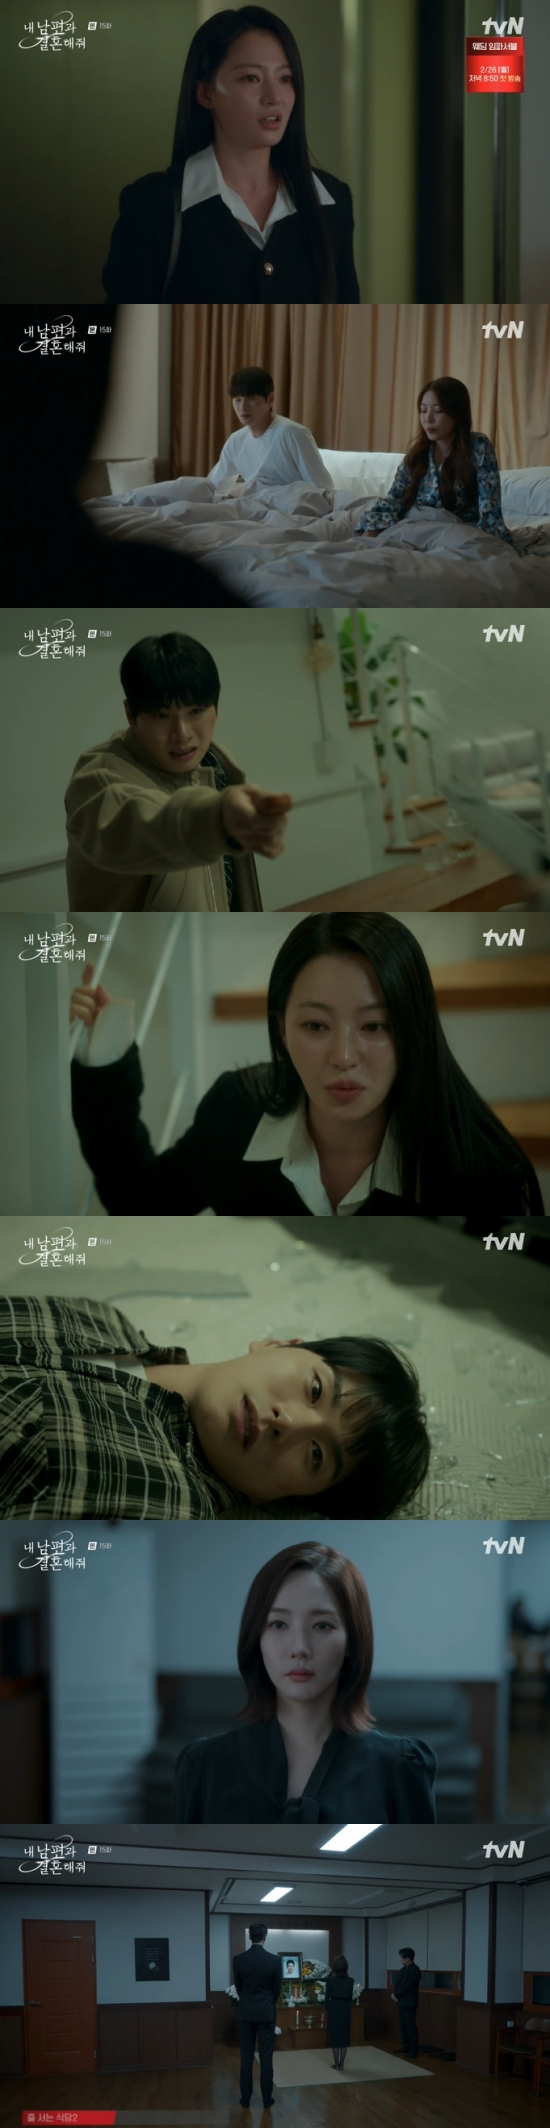 'Cô đi mà lấy chồng tôi' tập 15: Lee Yi Kyung hoán đổi số phận với Park Min Young